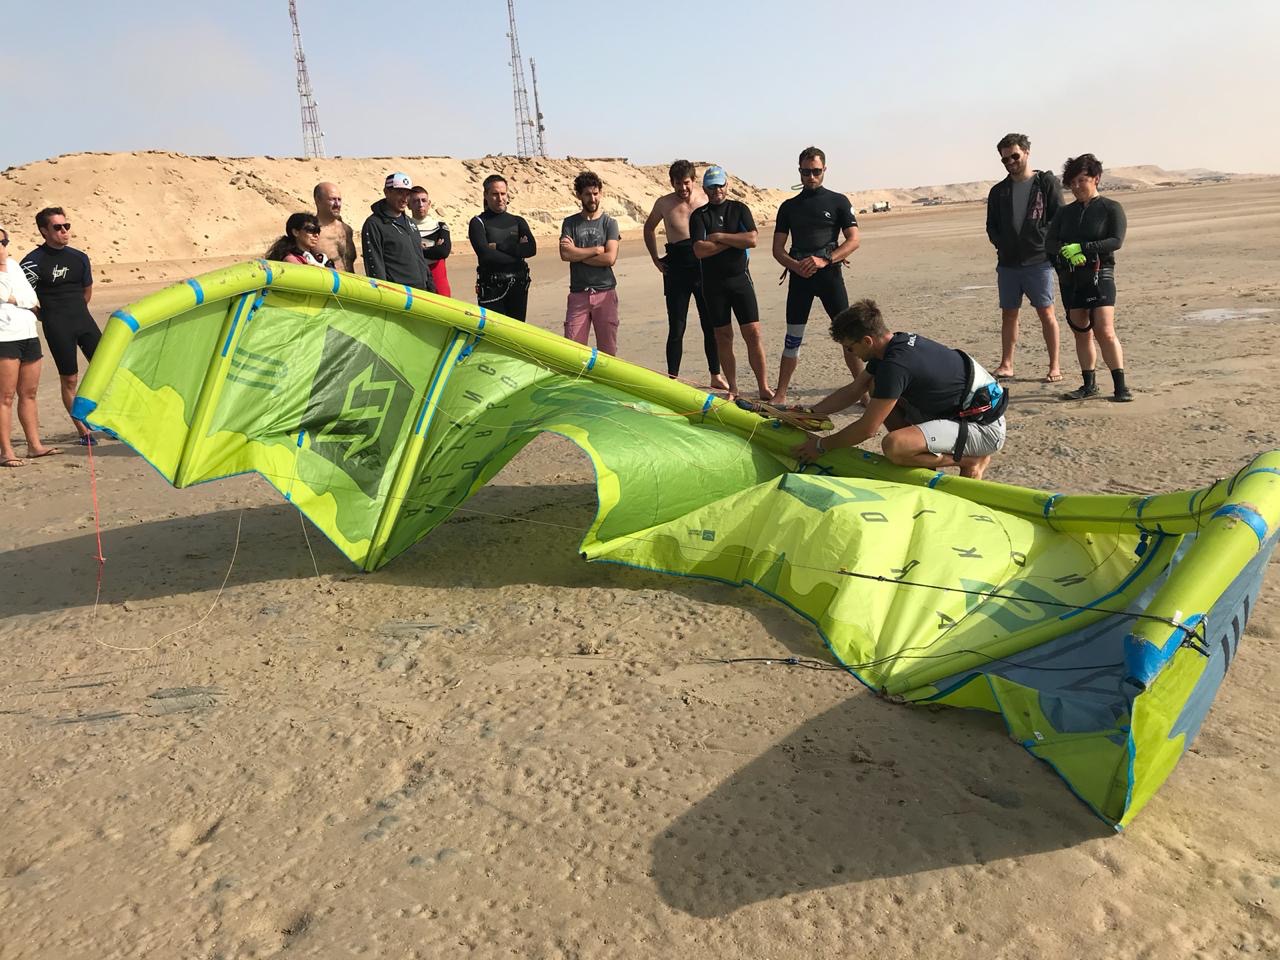 风筝冲浪课程Dakhla |摩洛哥|风筝控制。jpg